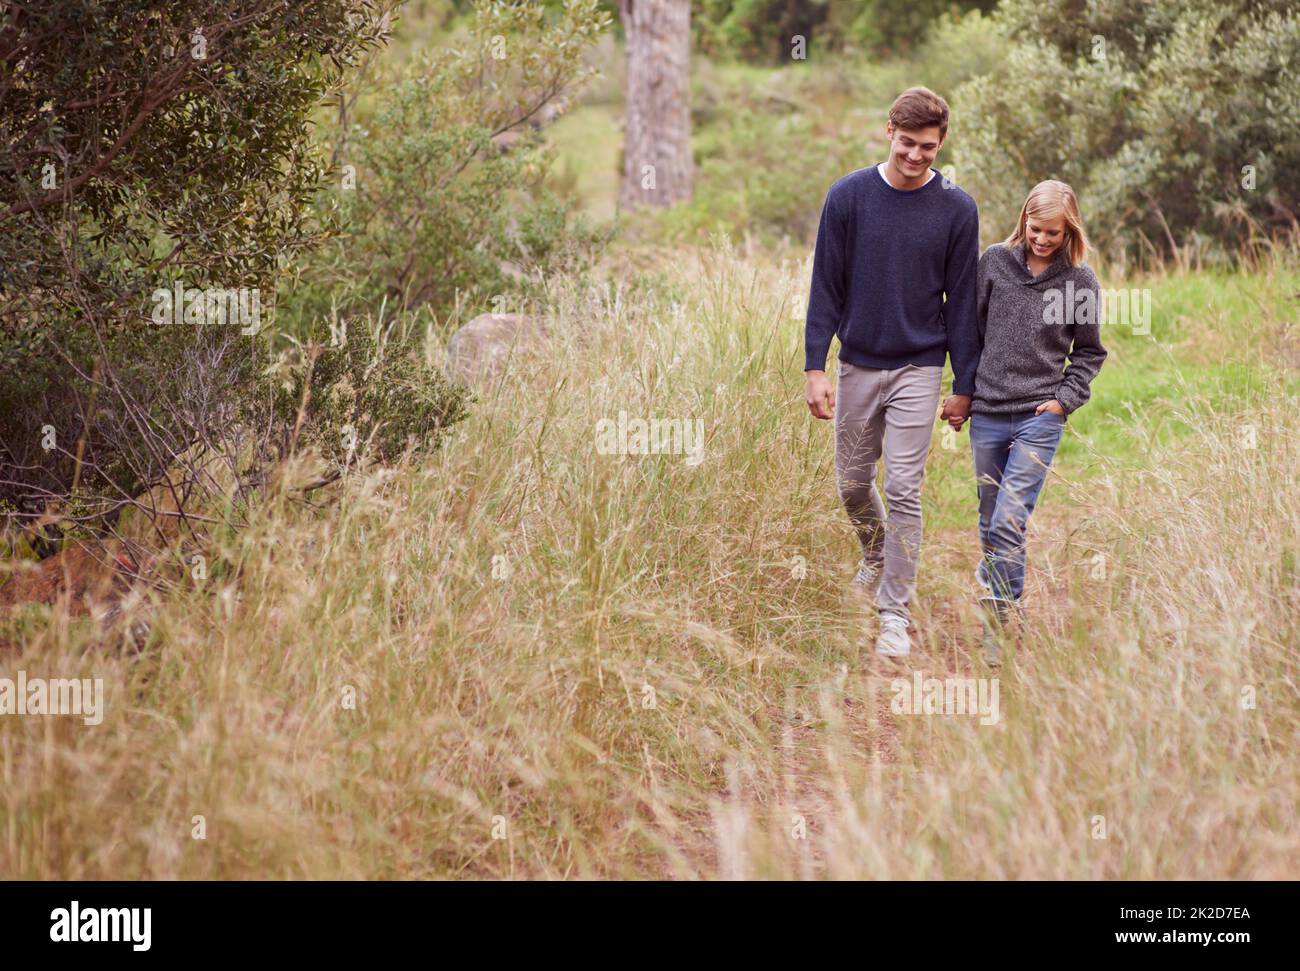 Passeggiata in campagna. Una giovane coppia passeggiando a mano attraverso un prato. Foto Stock